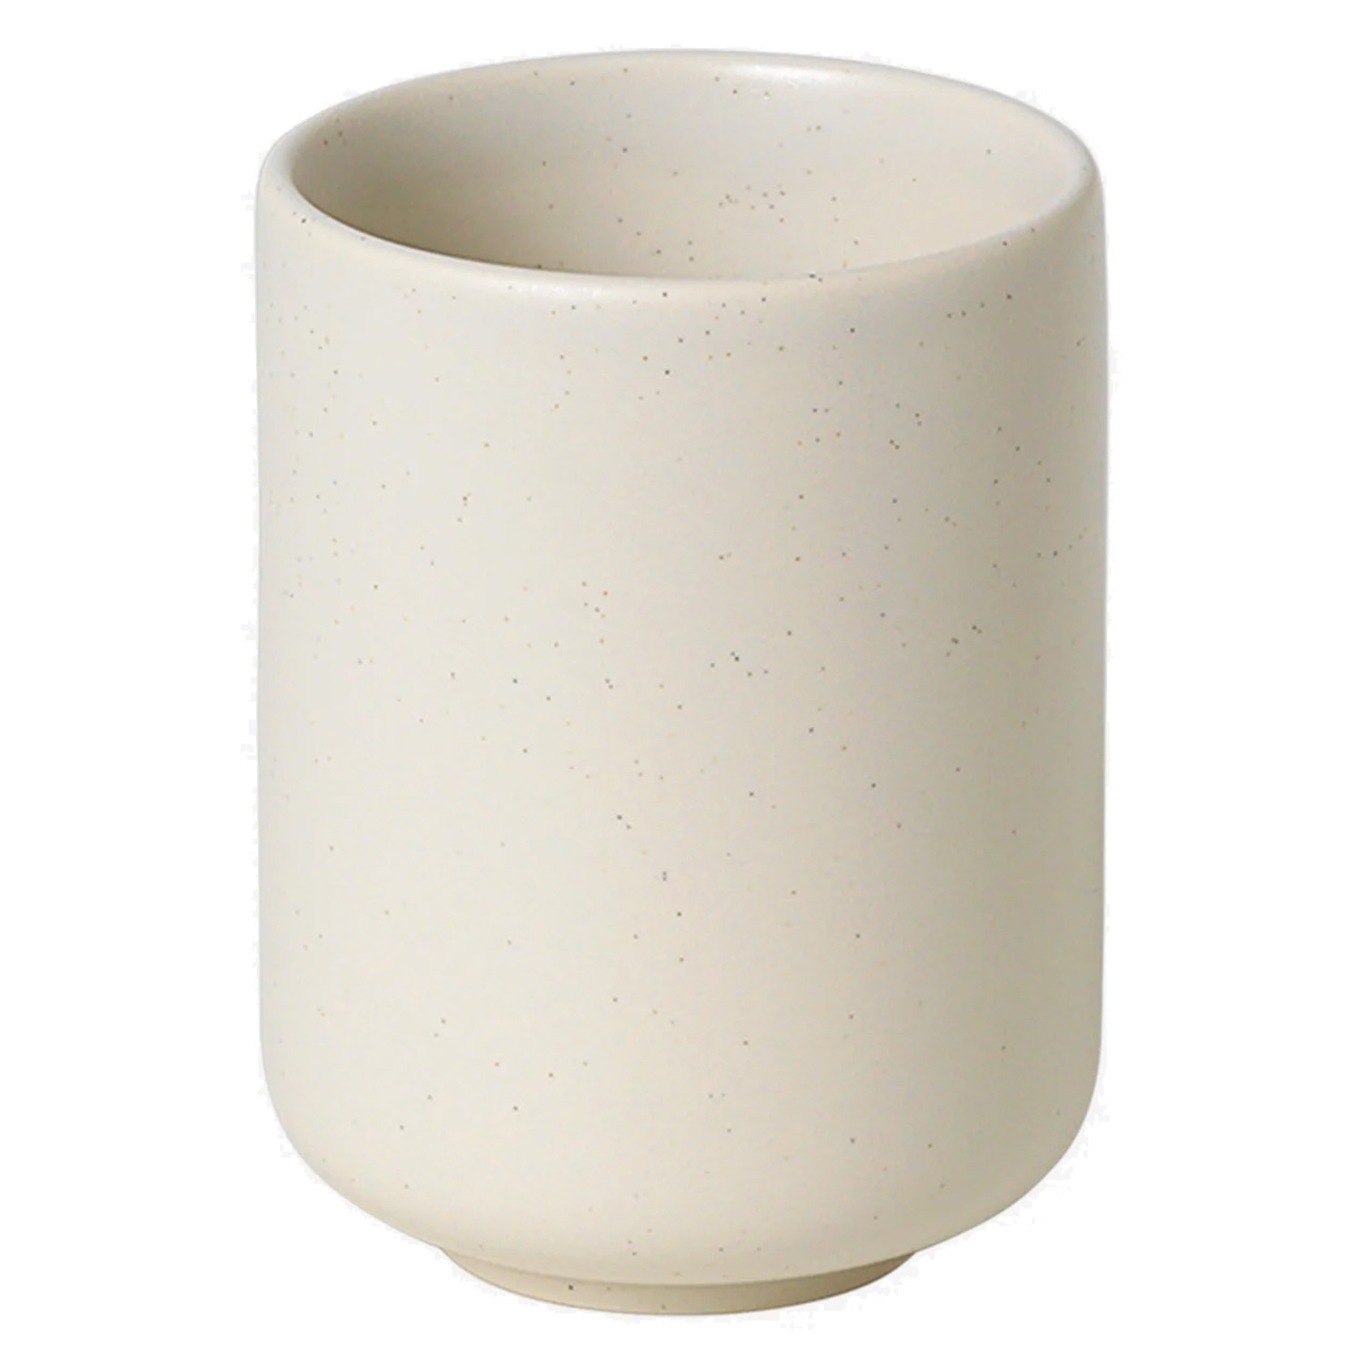 Ceramic Pisu Kopp 11 cm, Vanilla White